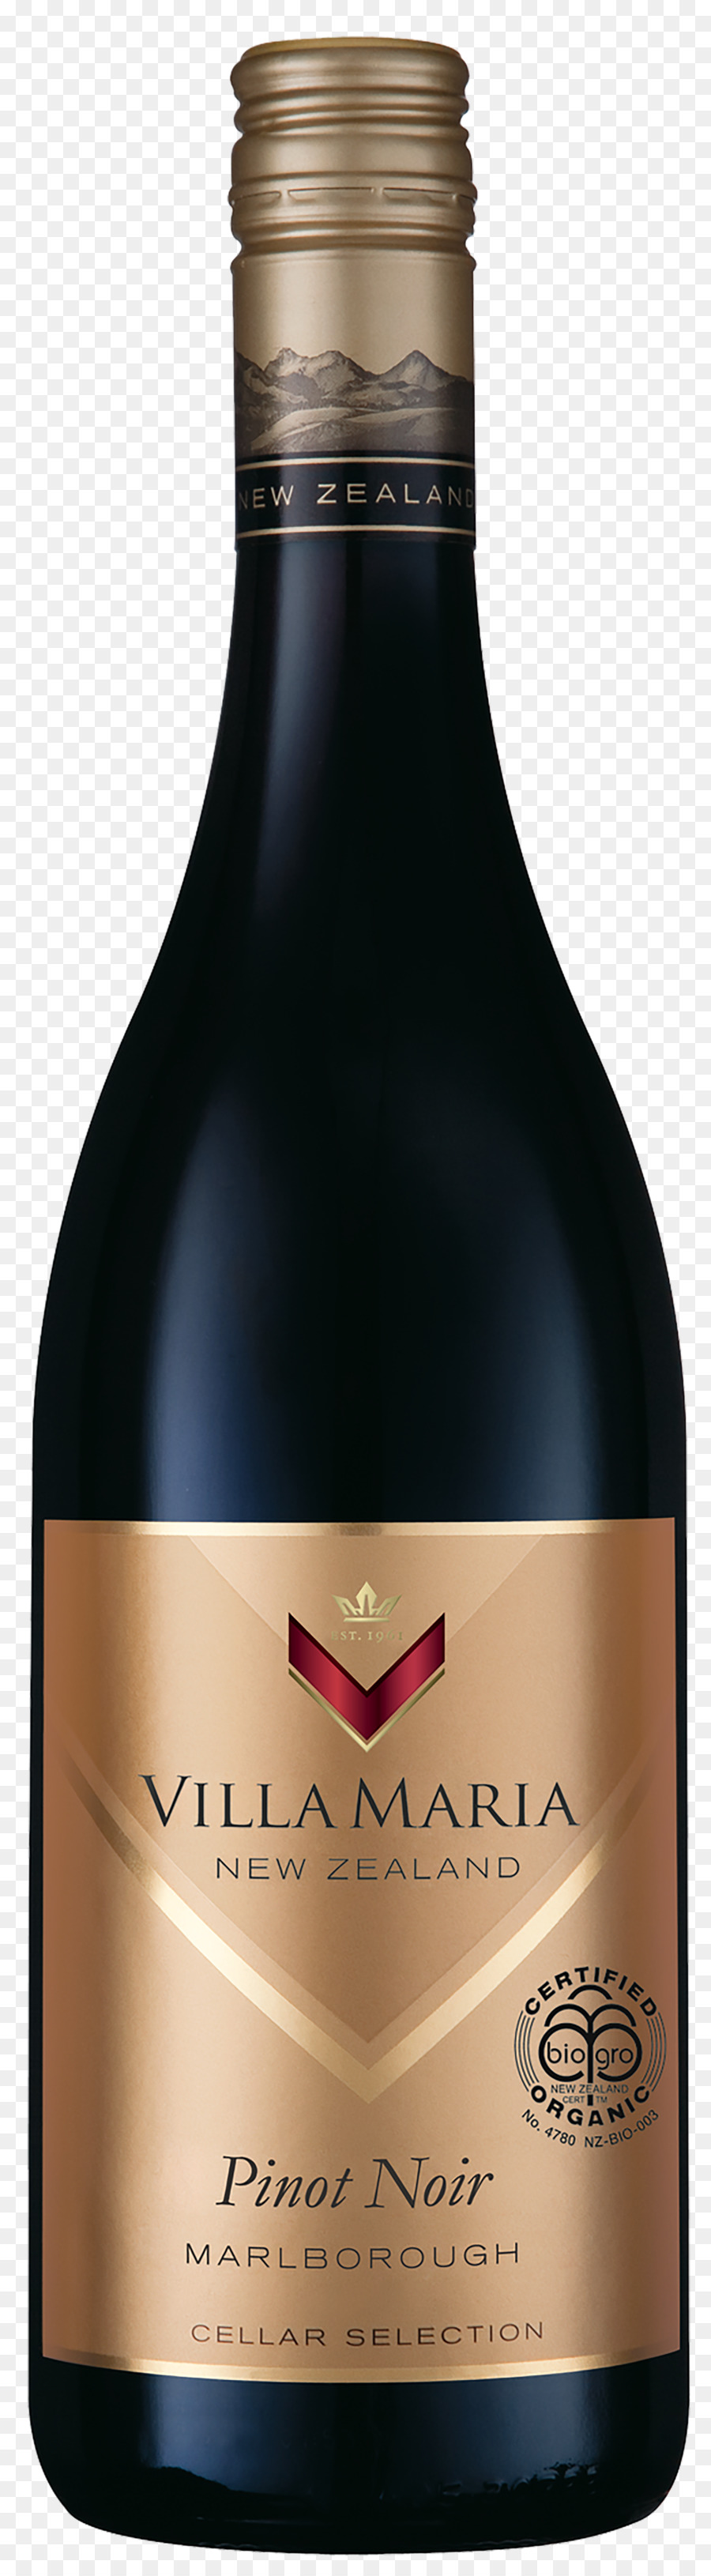 Vin，Pinot Noir PNG